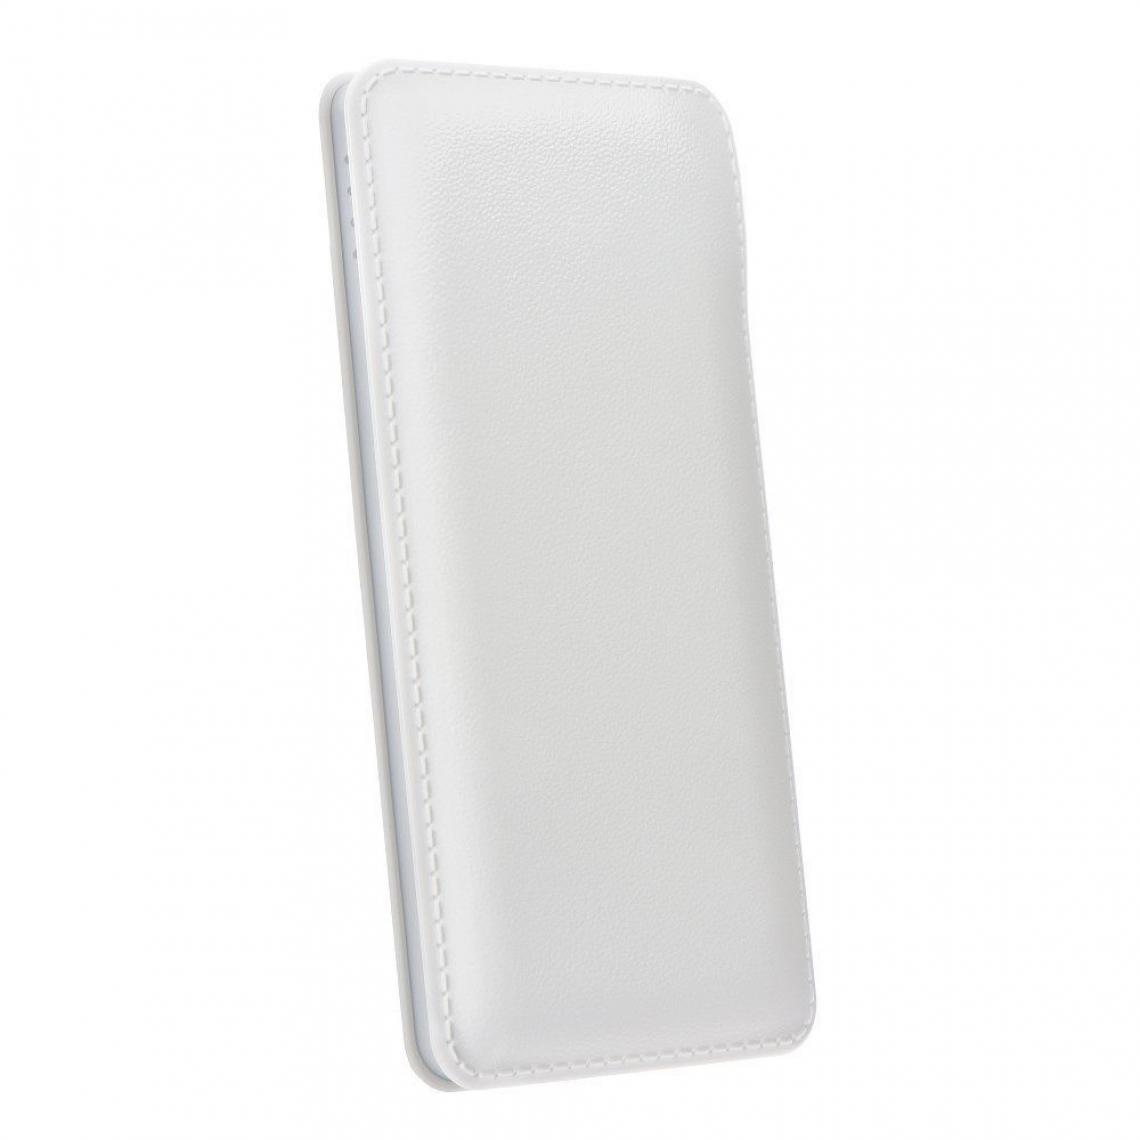 Ozzzo - Chargeur batterie externe 30000 mAh powerbank ozzzo blanc pour Xiaomi Redmi 5 - Autres accessoires smartphone